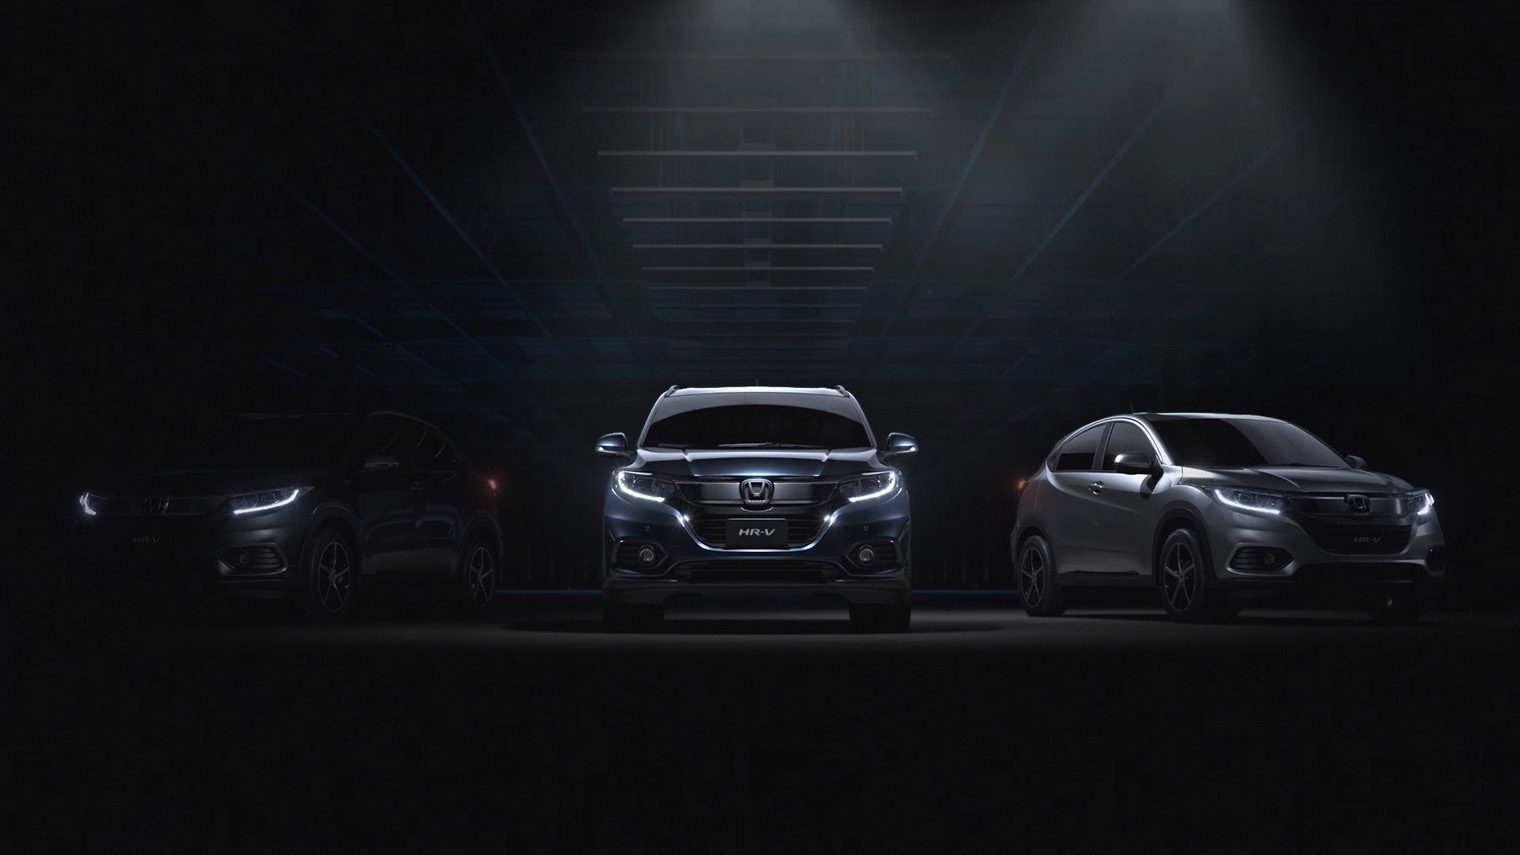 Honda HR-V vídeo apresentação. Projeto: Filme animação Full CGI 3D com construção de cenário e veículo em 3D. Projeto de hiper-realismo automotivo apresentando as principais features para o lançamento do carro no Brasil